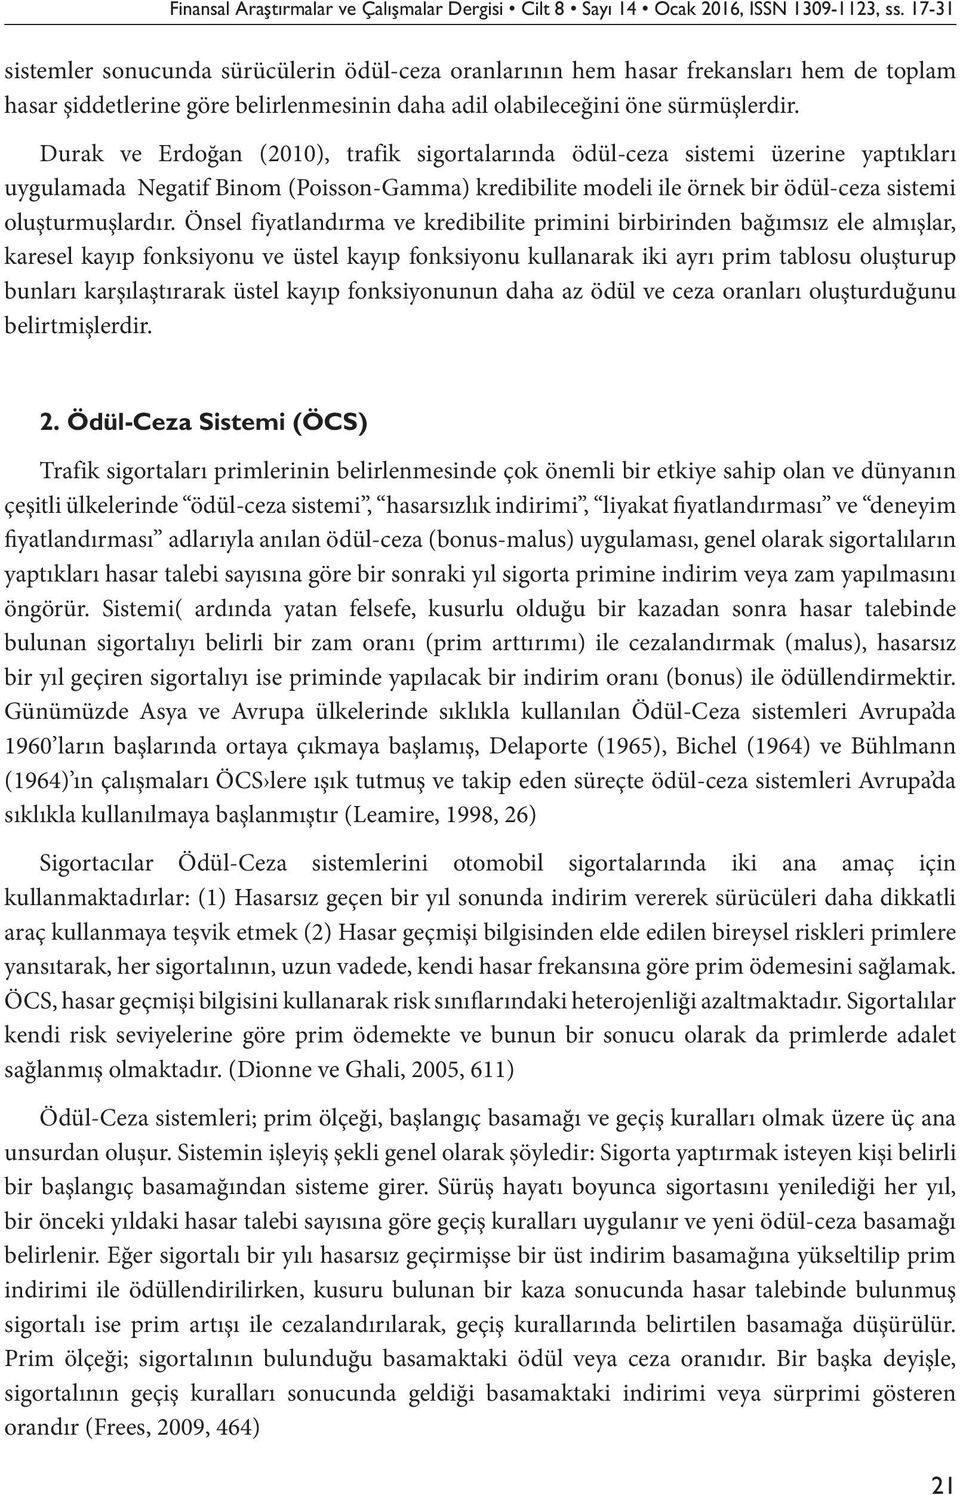 Durak ve Erdoğan (2010), trafik sigortalarında ödül-ceza sistemi üzerine yaptıkları uygulamada Negatif Binom (Poisson-Gamma) kredibilite modeli ile örnek bir ödül-ceza sistemi oluşturmuşlardır.